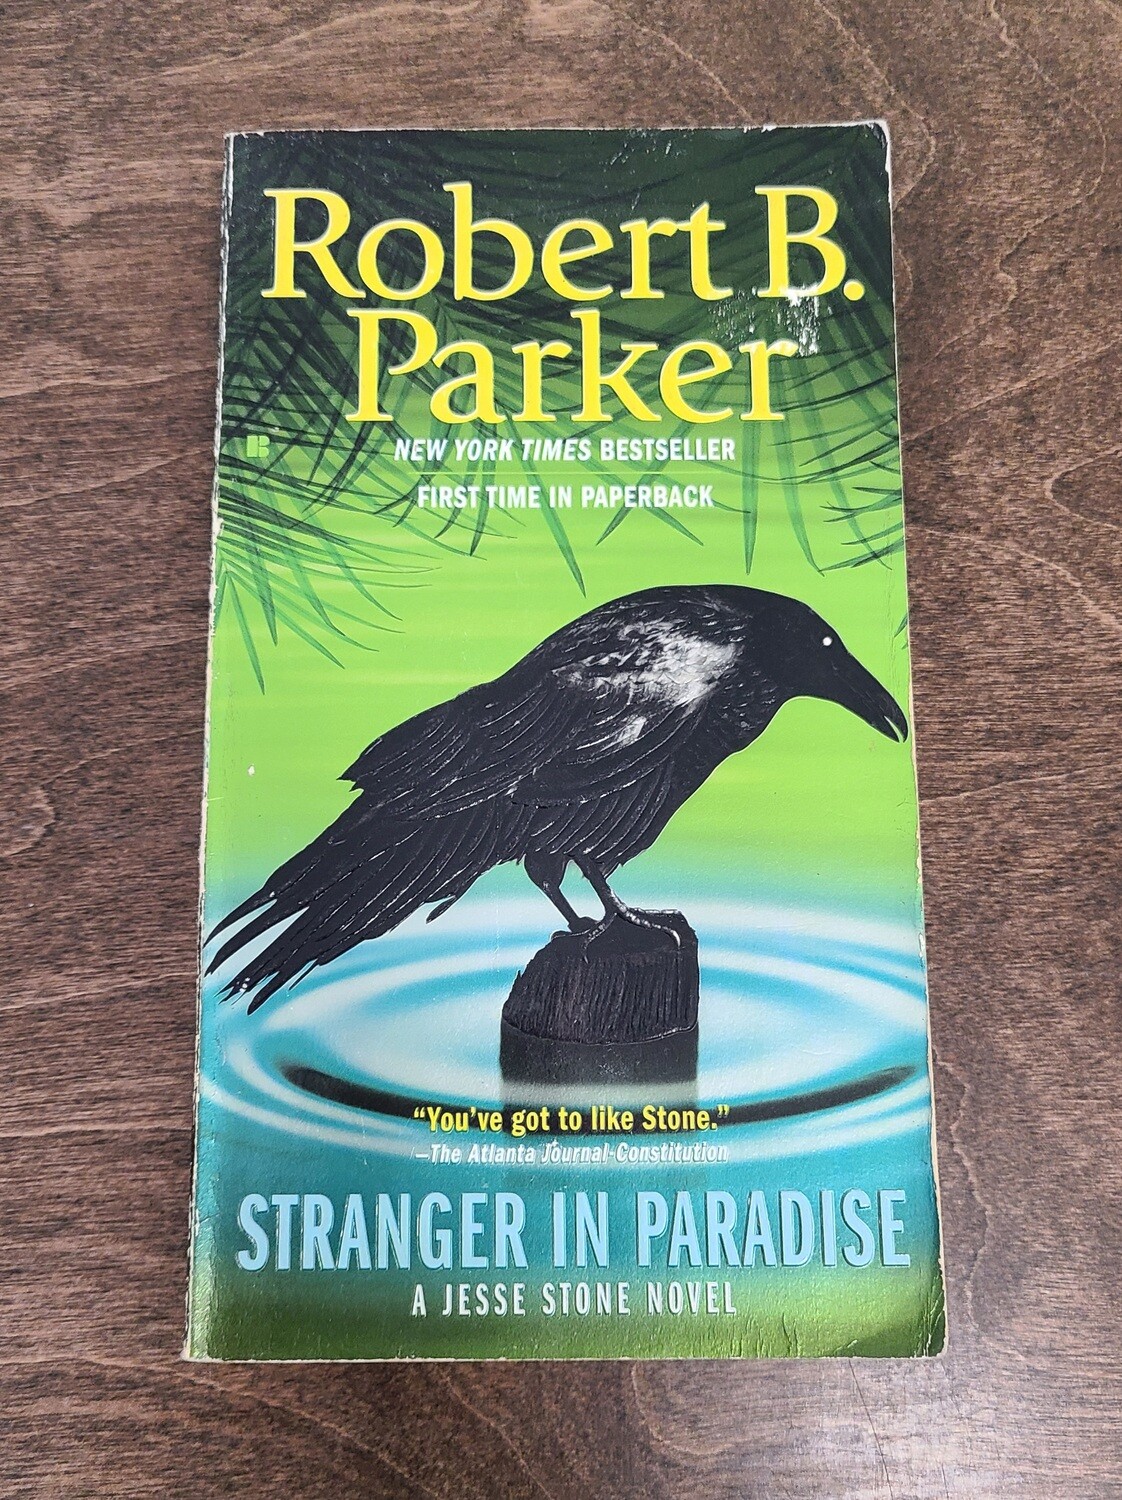 Stranger in Paradise by Robert B. Parker